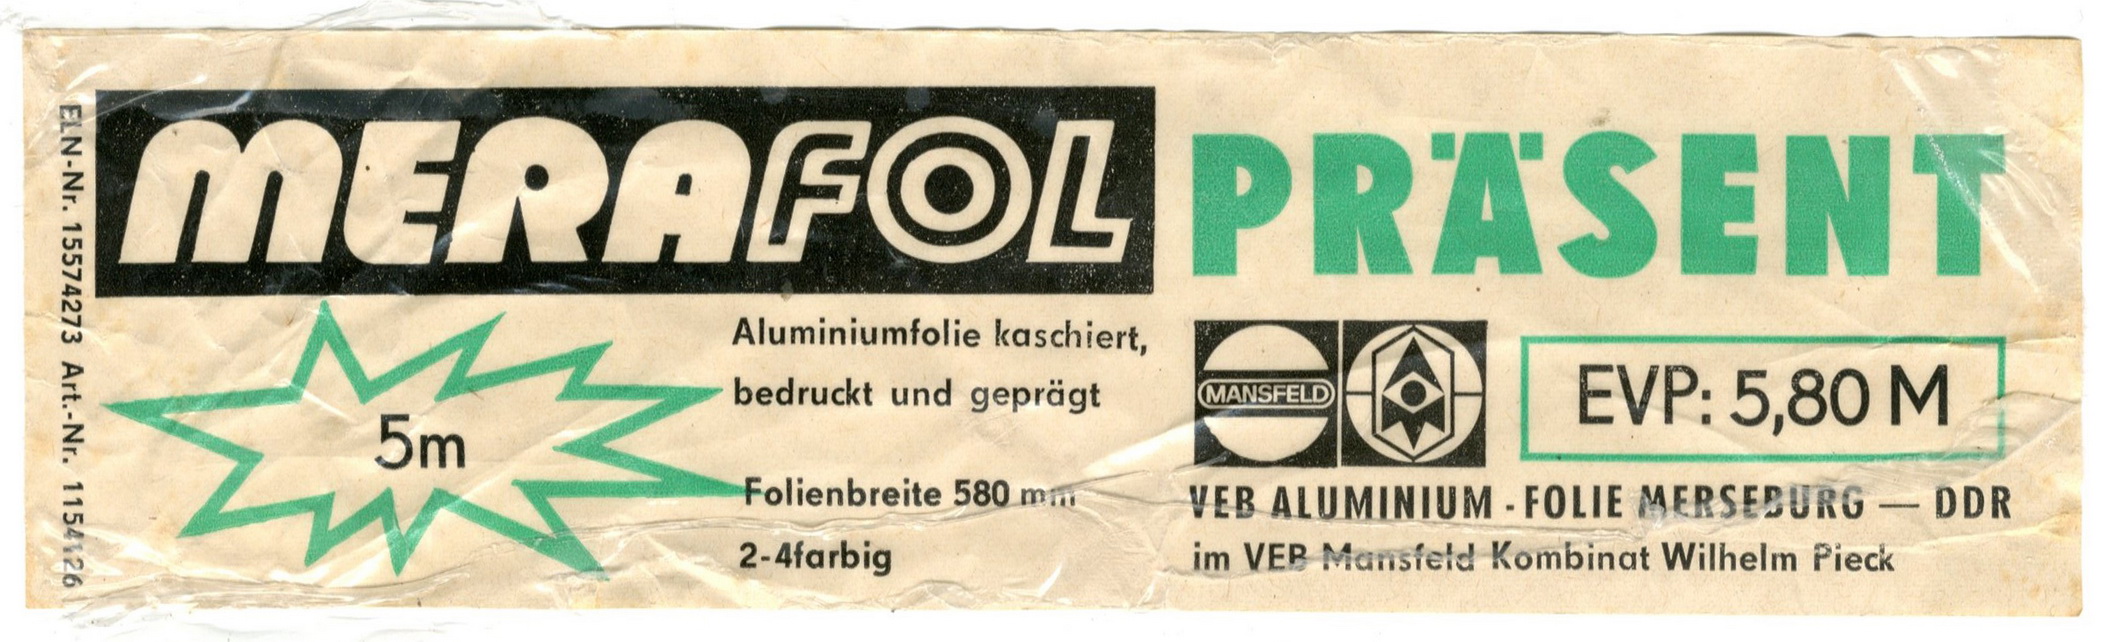 Etikett für : "merafol PRÄSENT" (Haus der Geschichte Wittenberg RR-F)